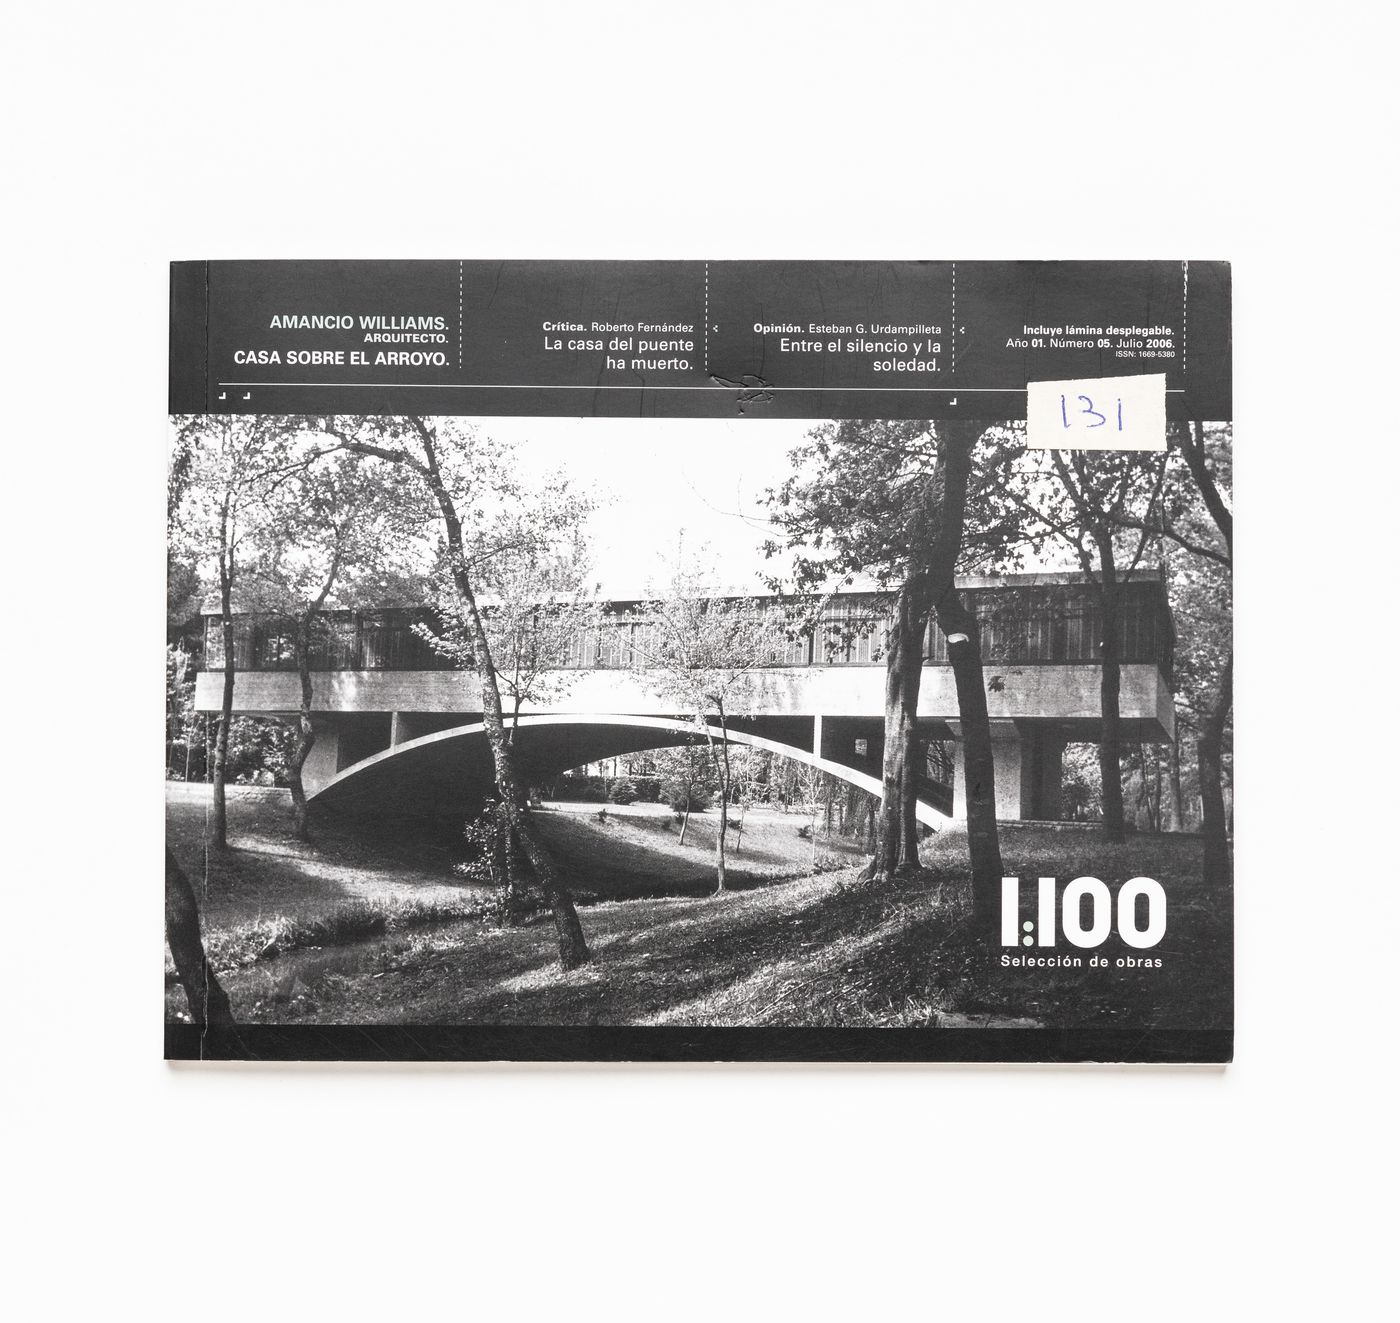 Serial "1:110 Seleccíon de obras: Amancio Williams architecto: Casa sobre el arroyo"